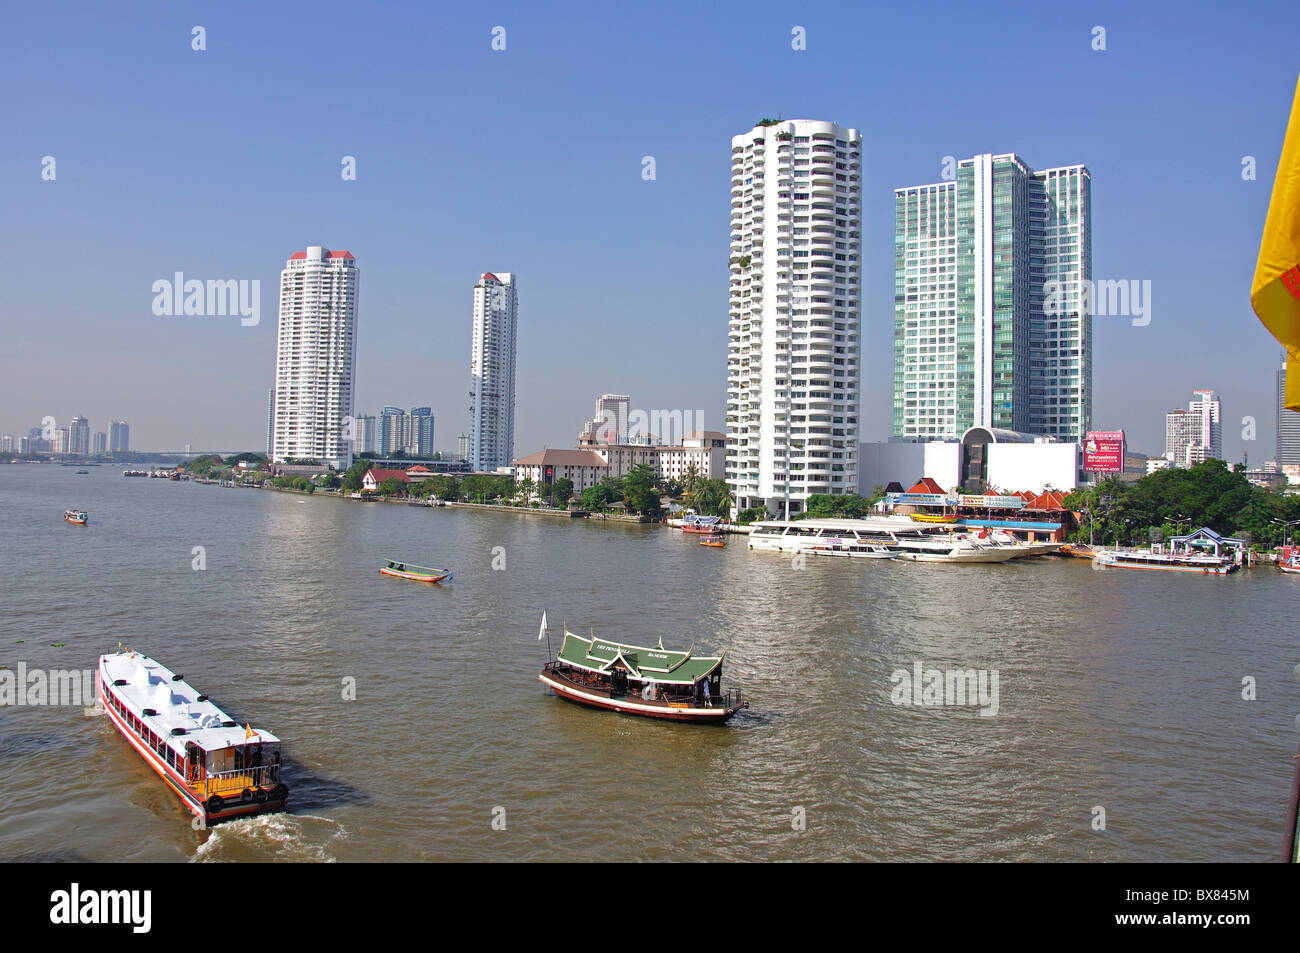 River boats on Chao Phraya River, Bang Rak District, Bangkok, Thailand Stock Photo